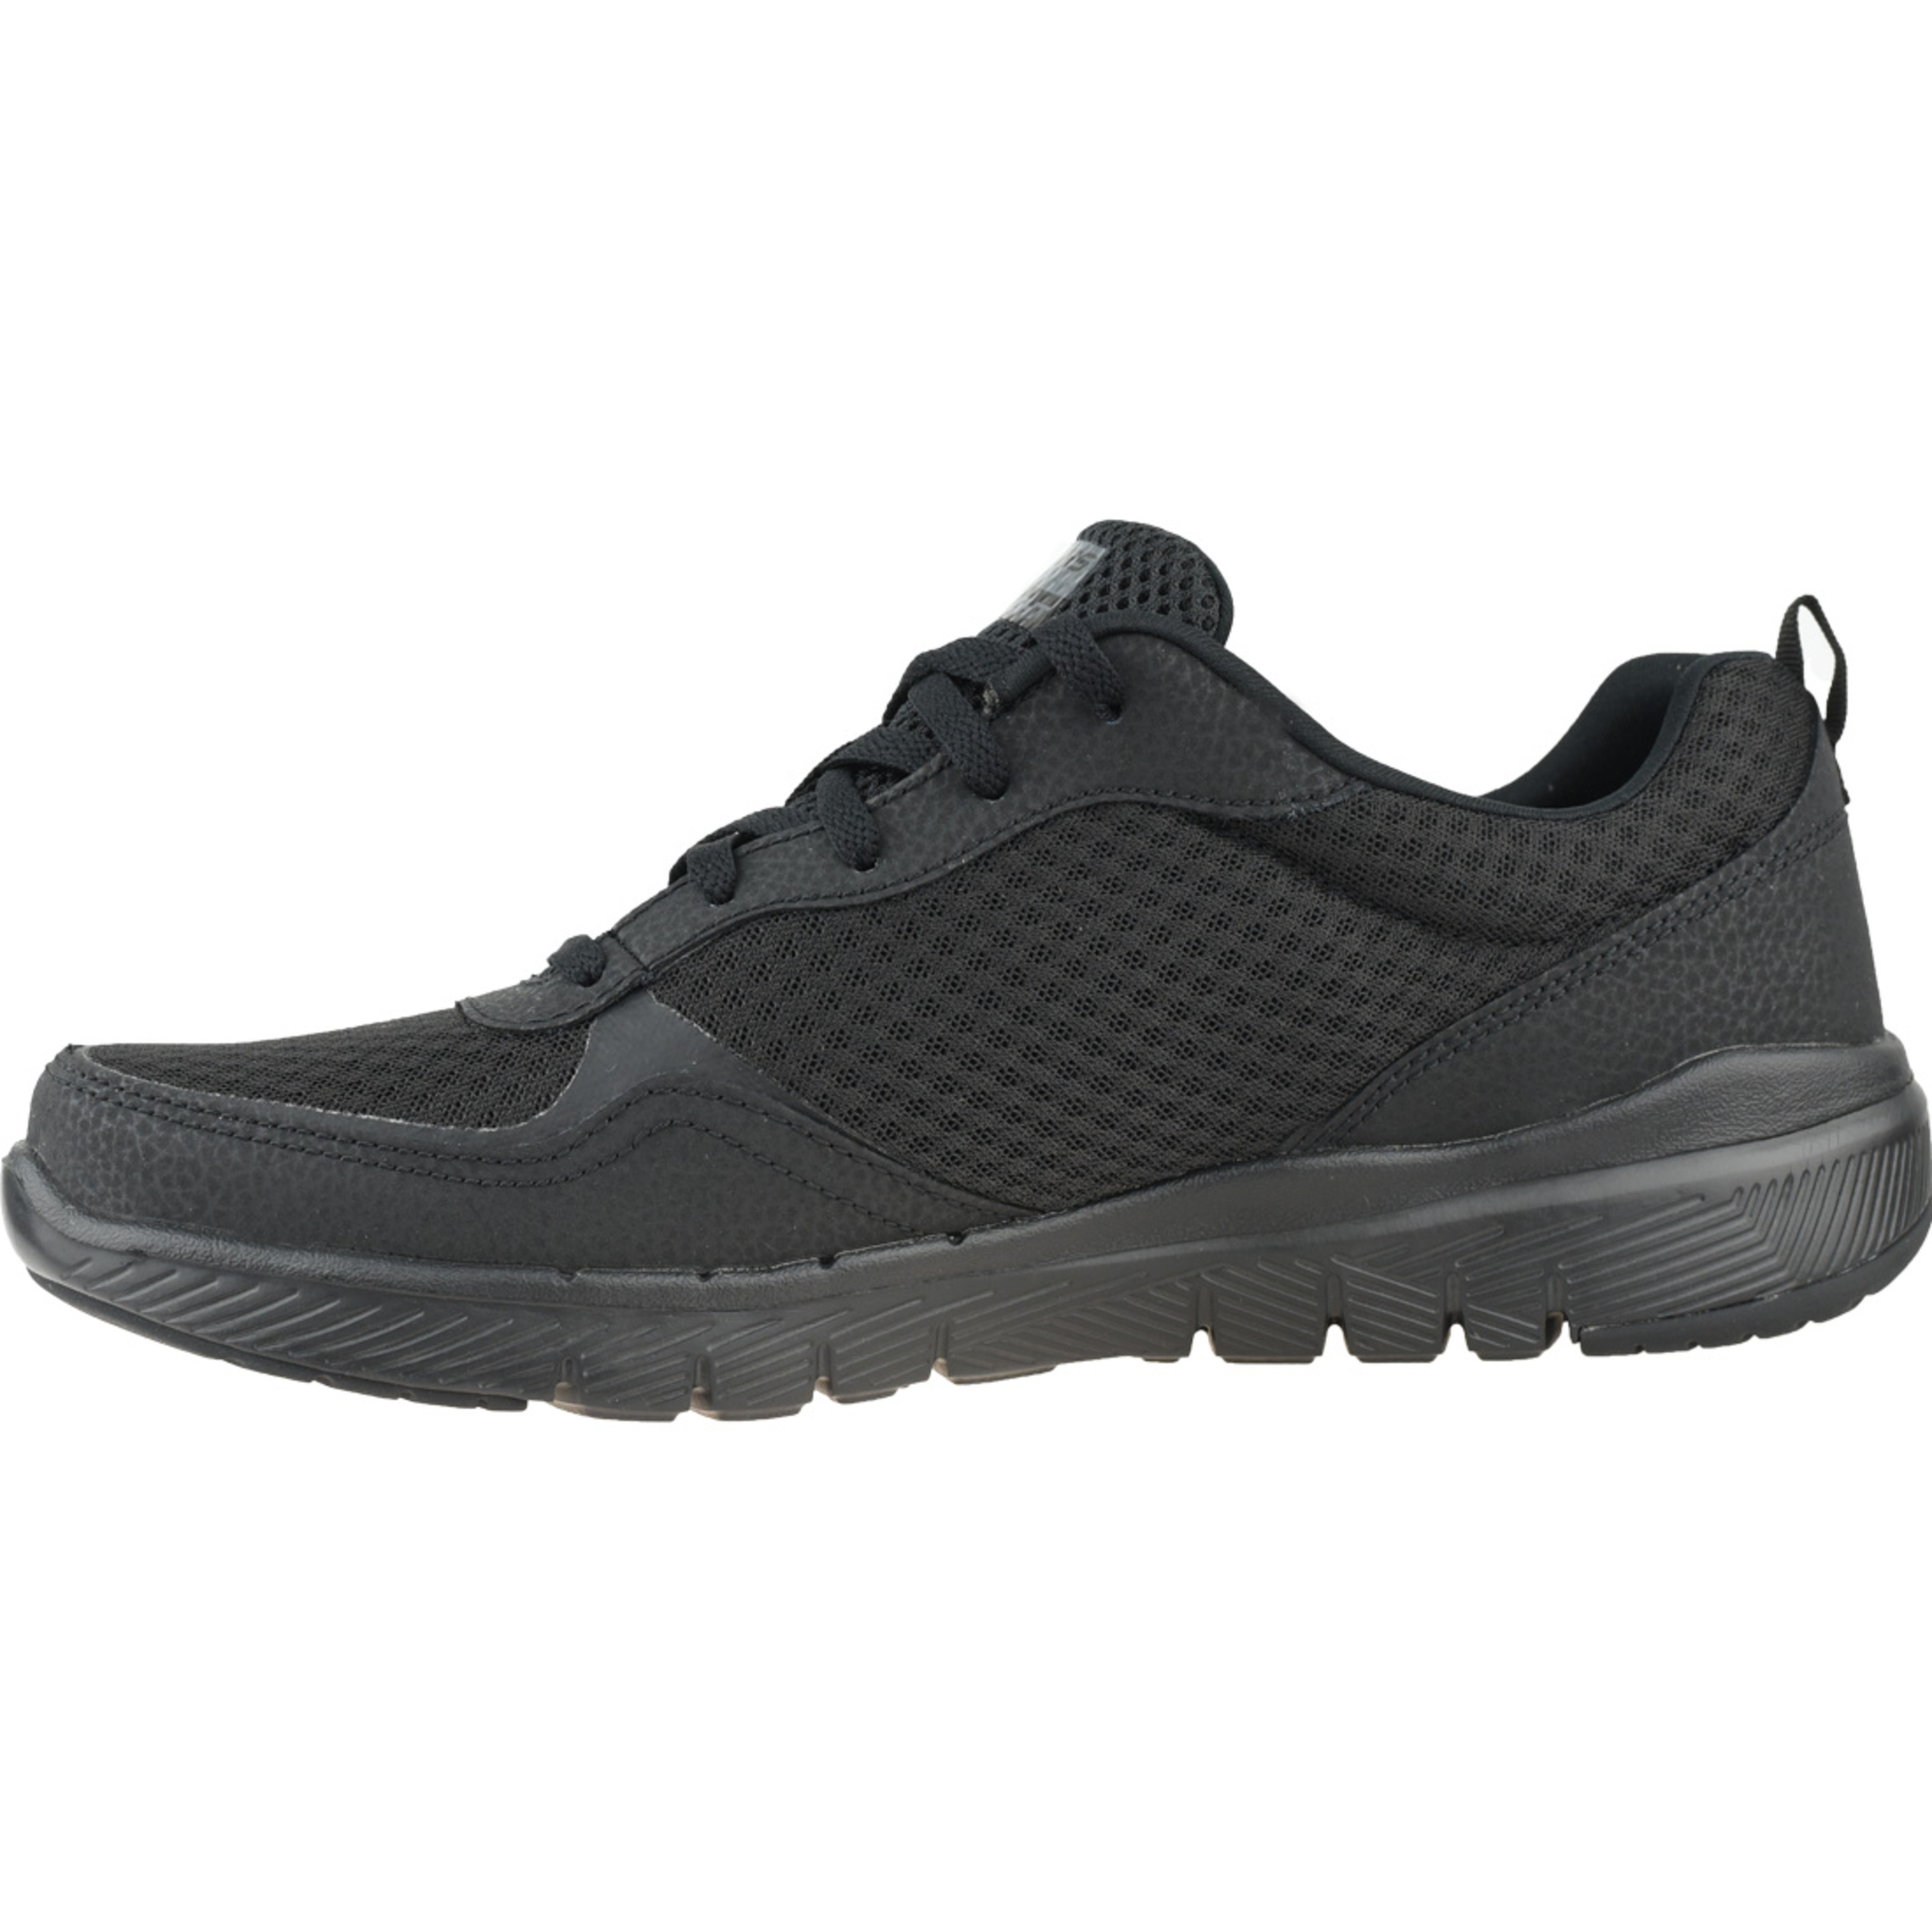 Zapatillas Skechers Flex Advantage 3.0 52954-bbk - negro - Hombres, Negro, Zapatos De Entrenamiento  MKP